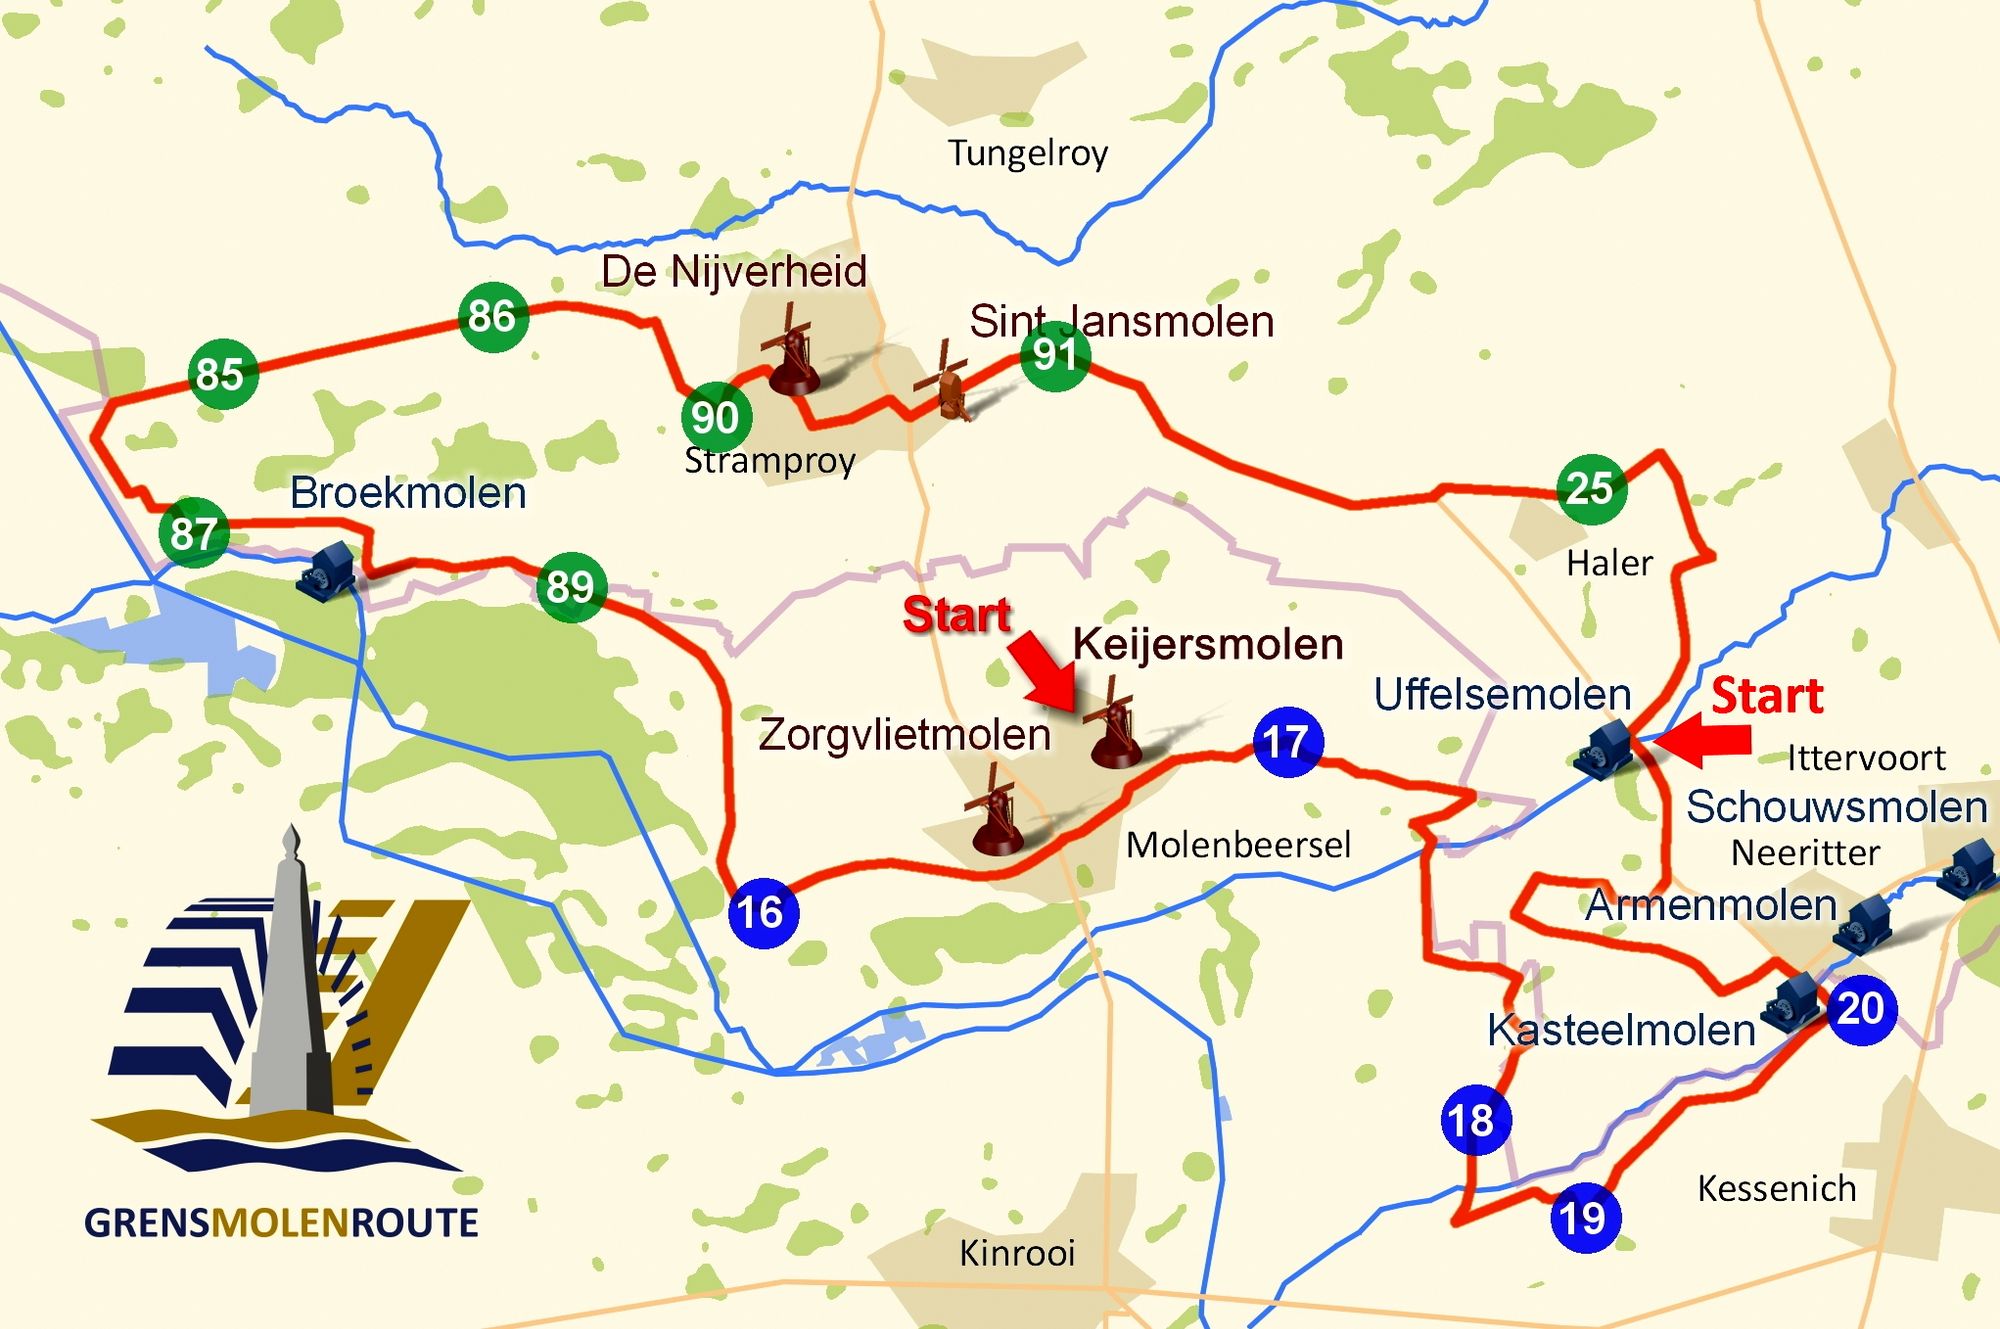 Toeren in Noord-Limburg tussen molens, natuurgebieden en landsgrenzen